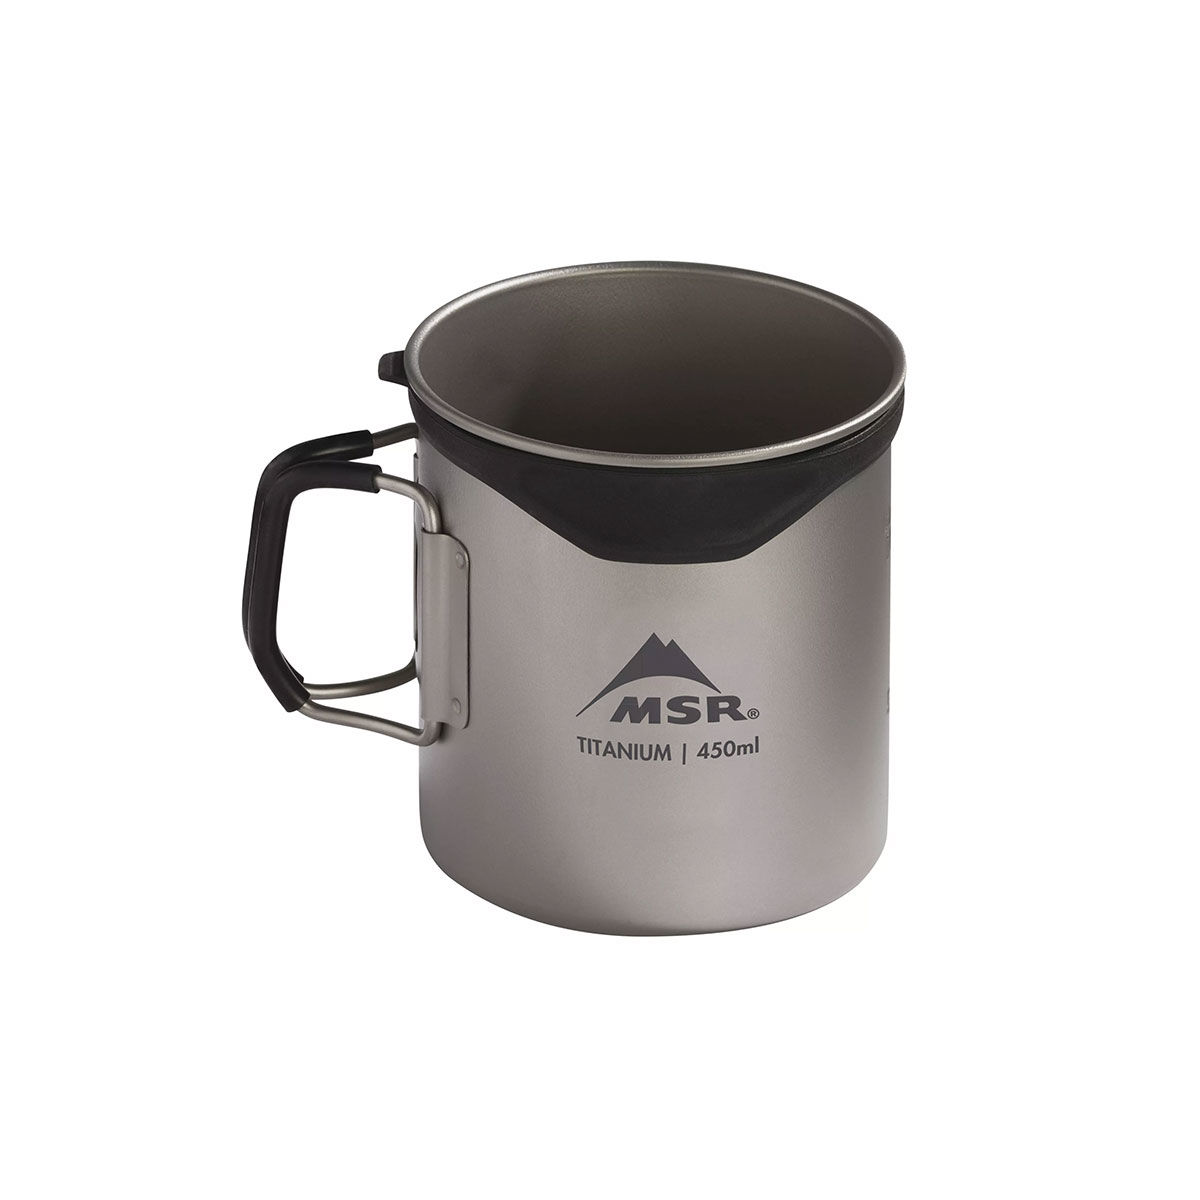 MSR titanium cup - 0.45L